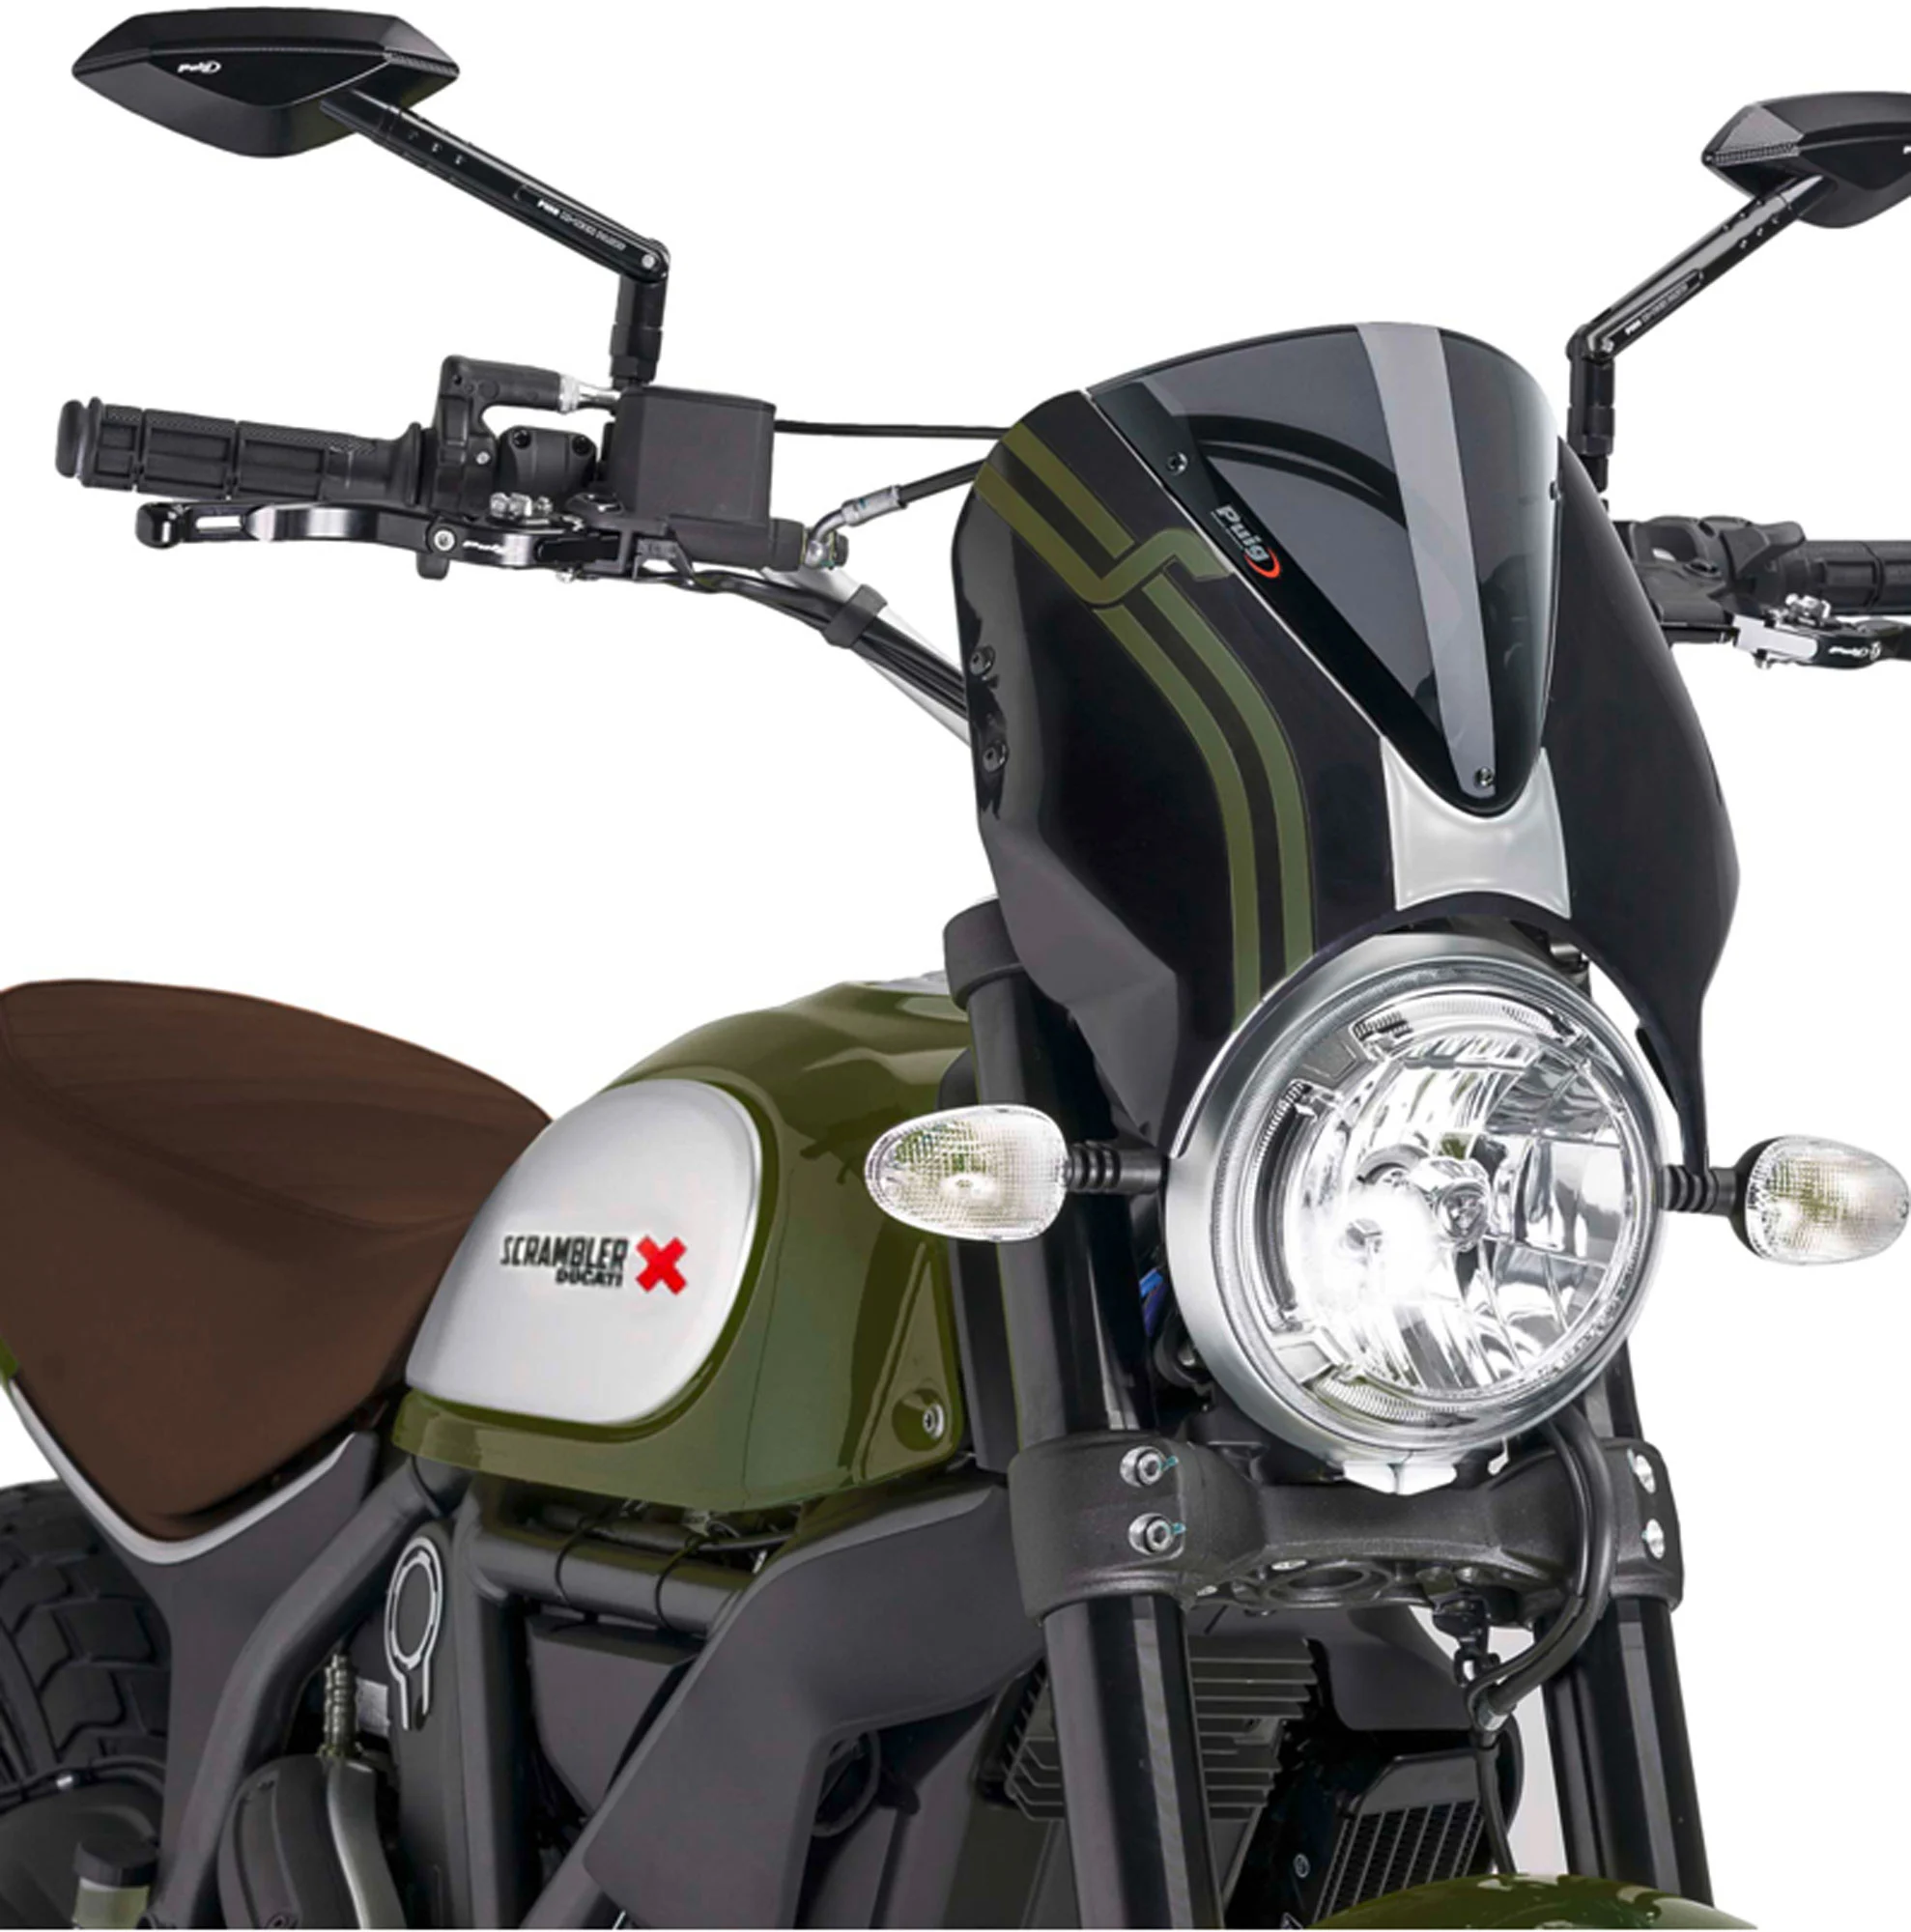  Filtro de aire para motocicleta, filtro de entrada de aire x  piezas de motocicleta de repuesto Acc : Automotriz